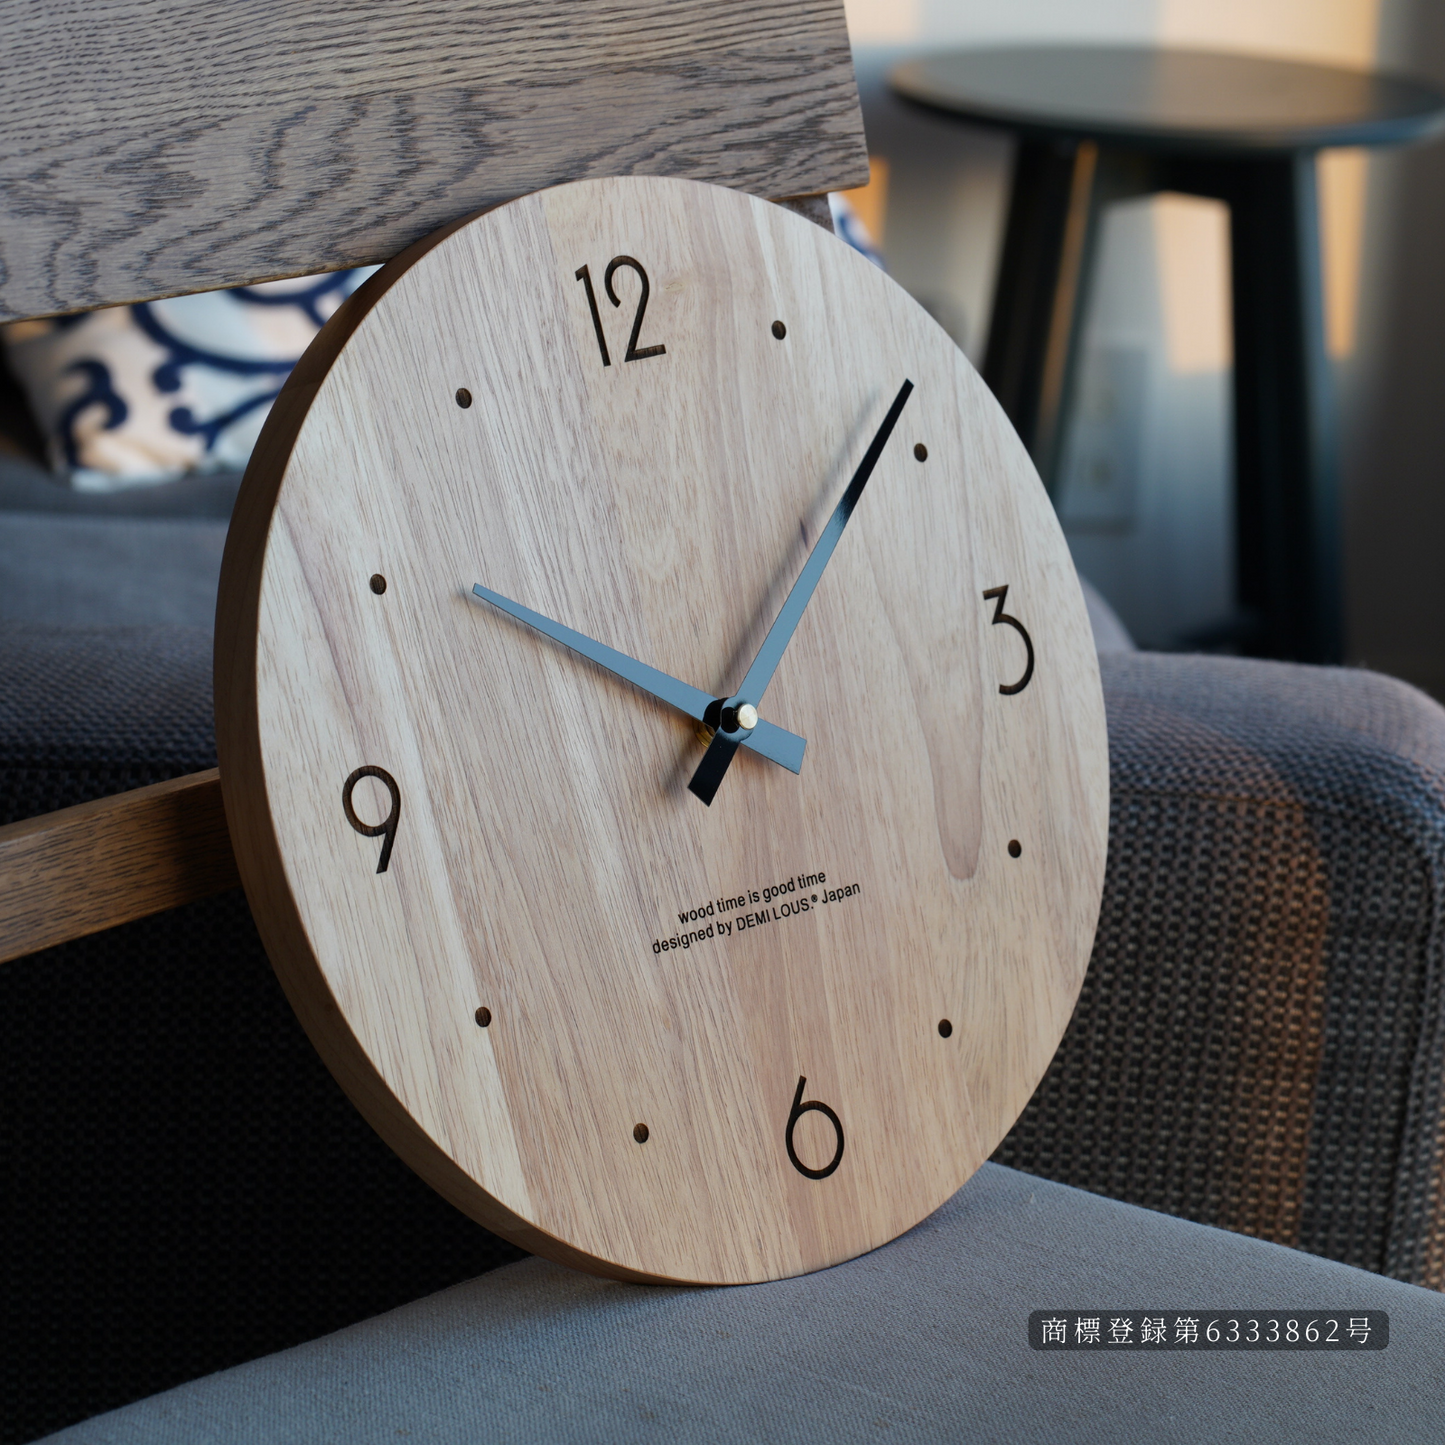 無垢の木 掛け時計 壁掛け時計 木製 アナログ 静音 お祝い demi lous. 3月新デザイン